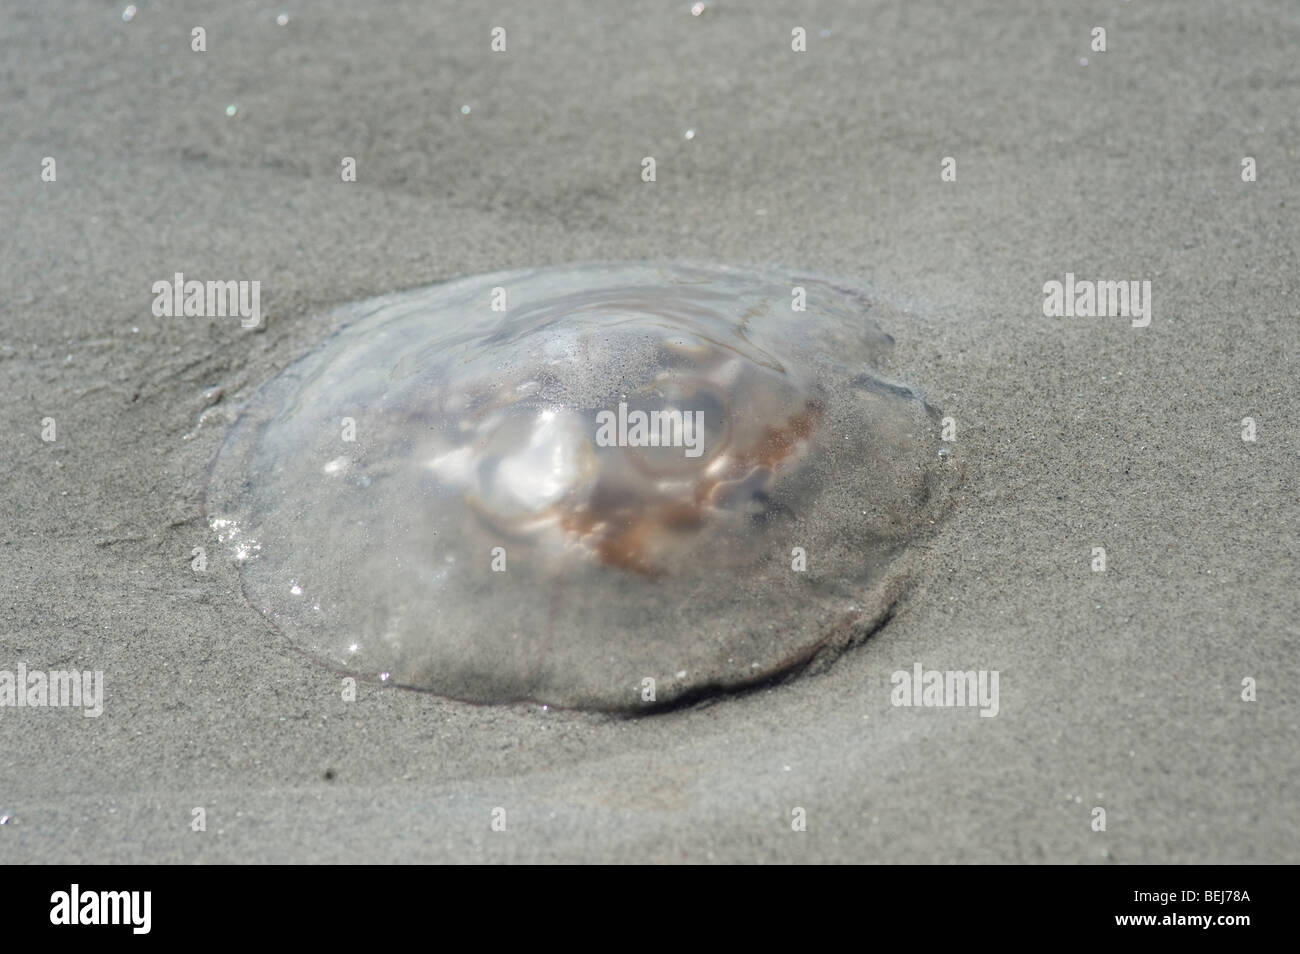 Moon jellyfish, Aurelia aurita, on beach Stock Photo